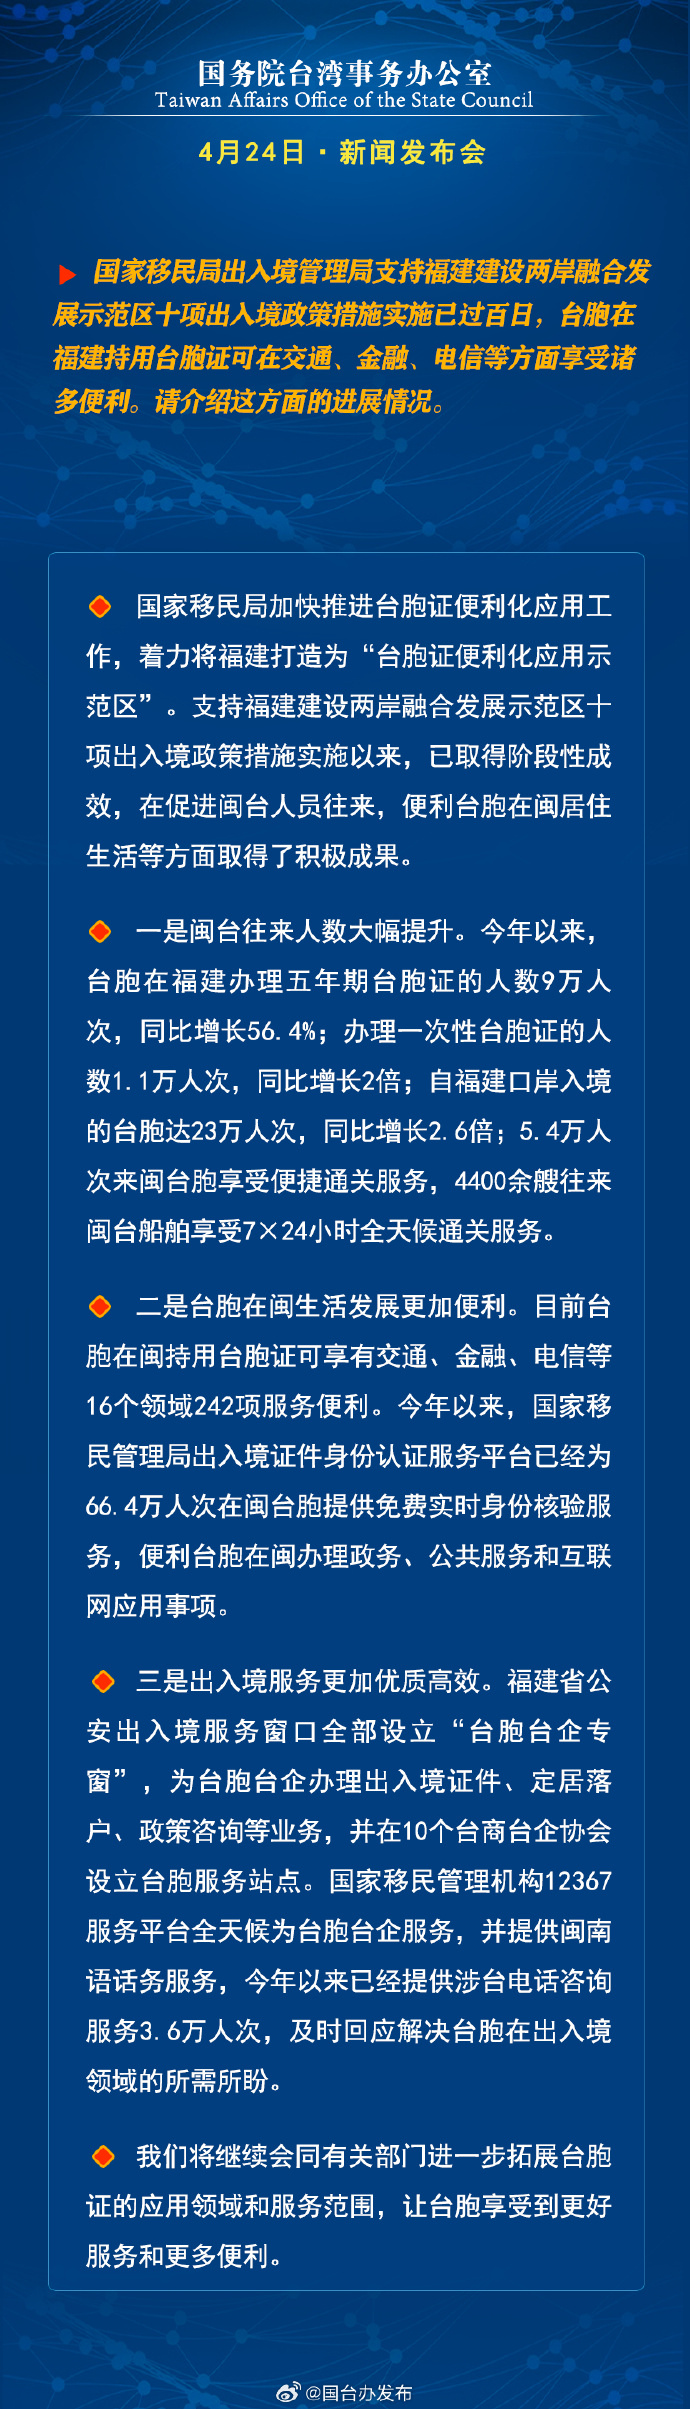 国务院台湾事务办公室4月24日·新闻发布会